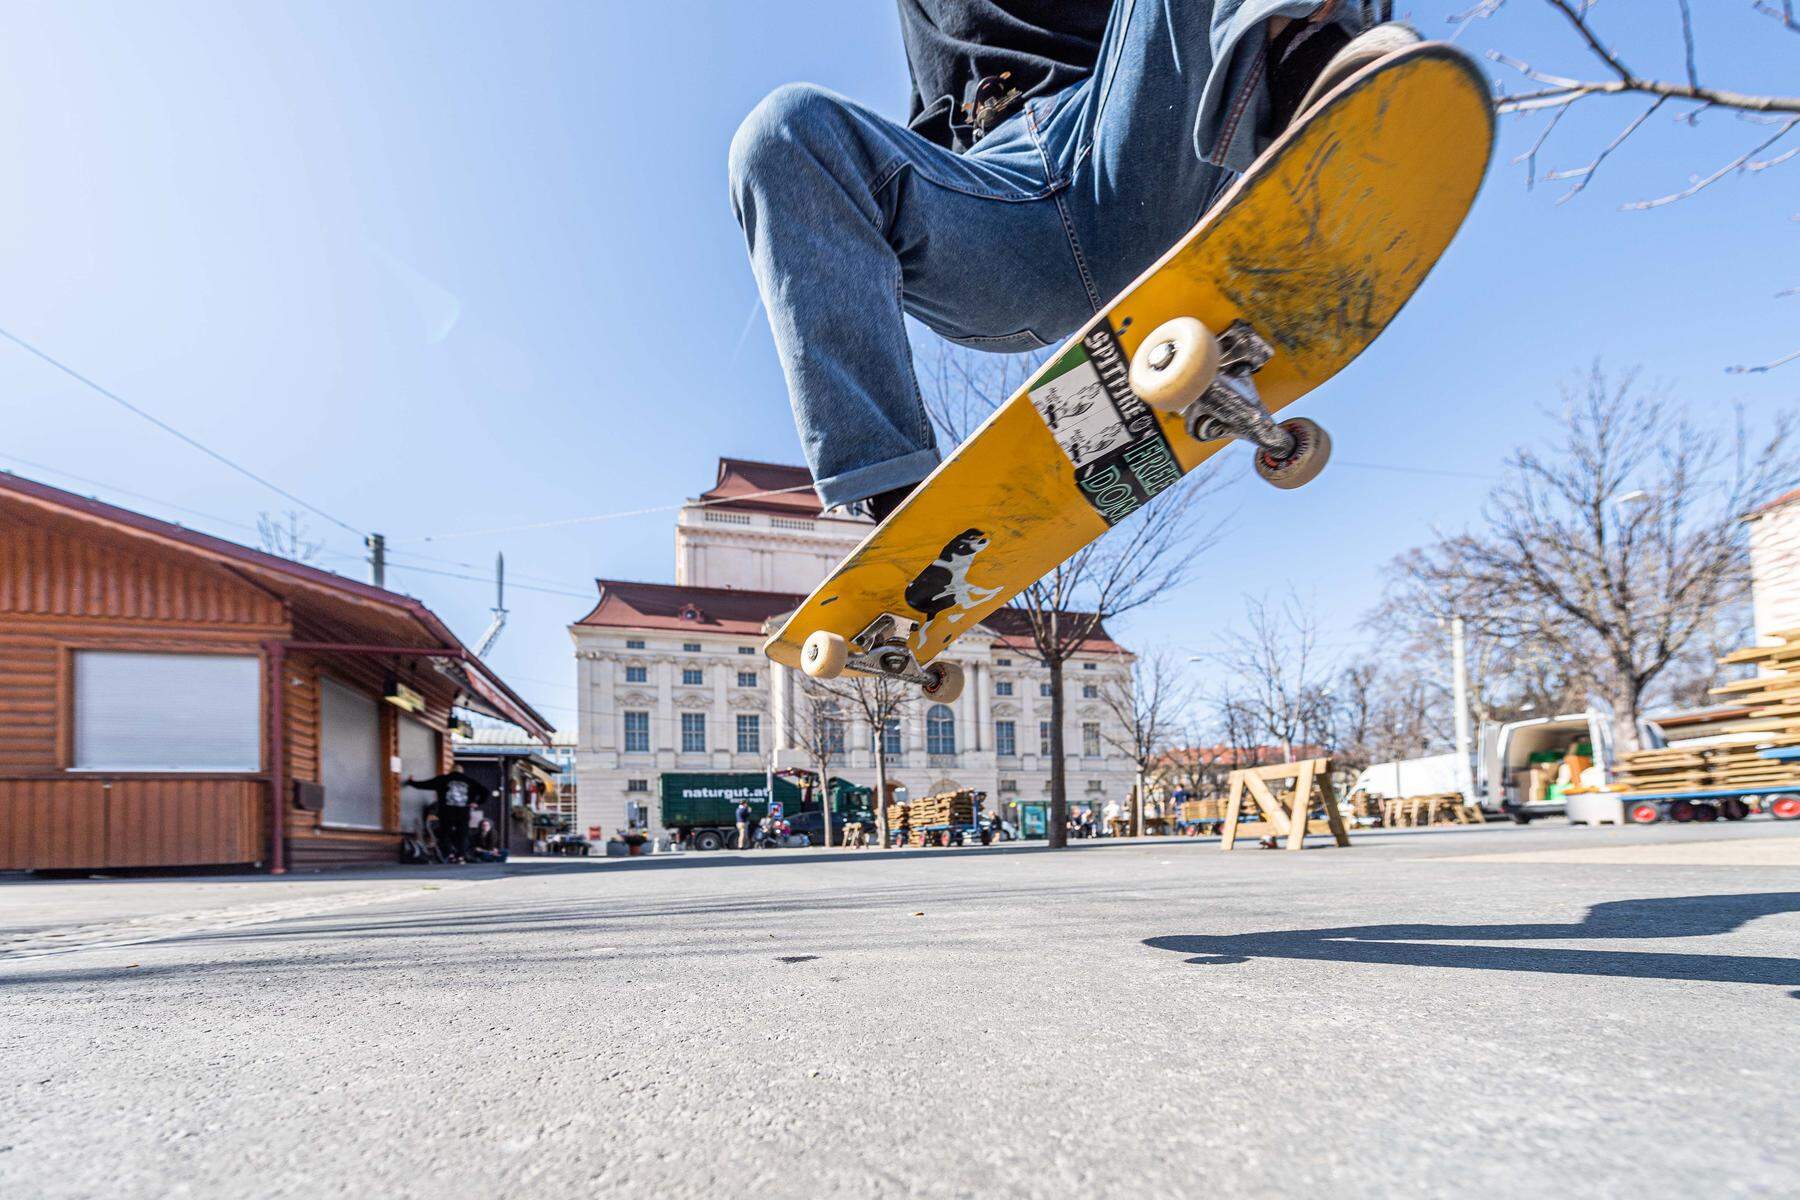 Trickverbot'' in Graz  Verein übernimmt die Strafen für Skater auf Grazer  Plätzen